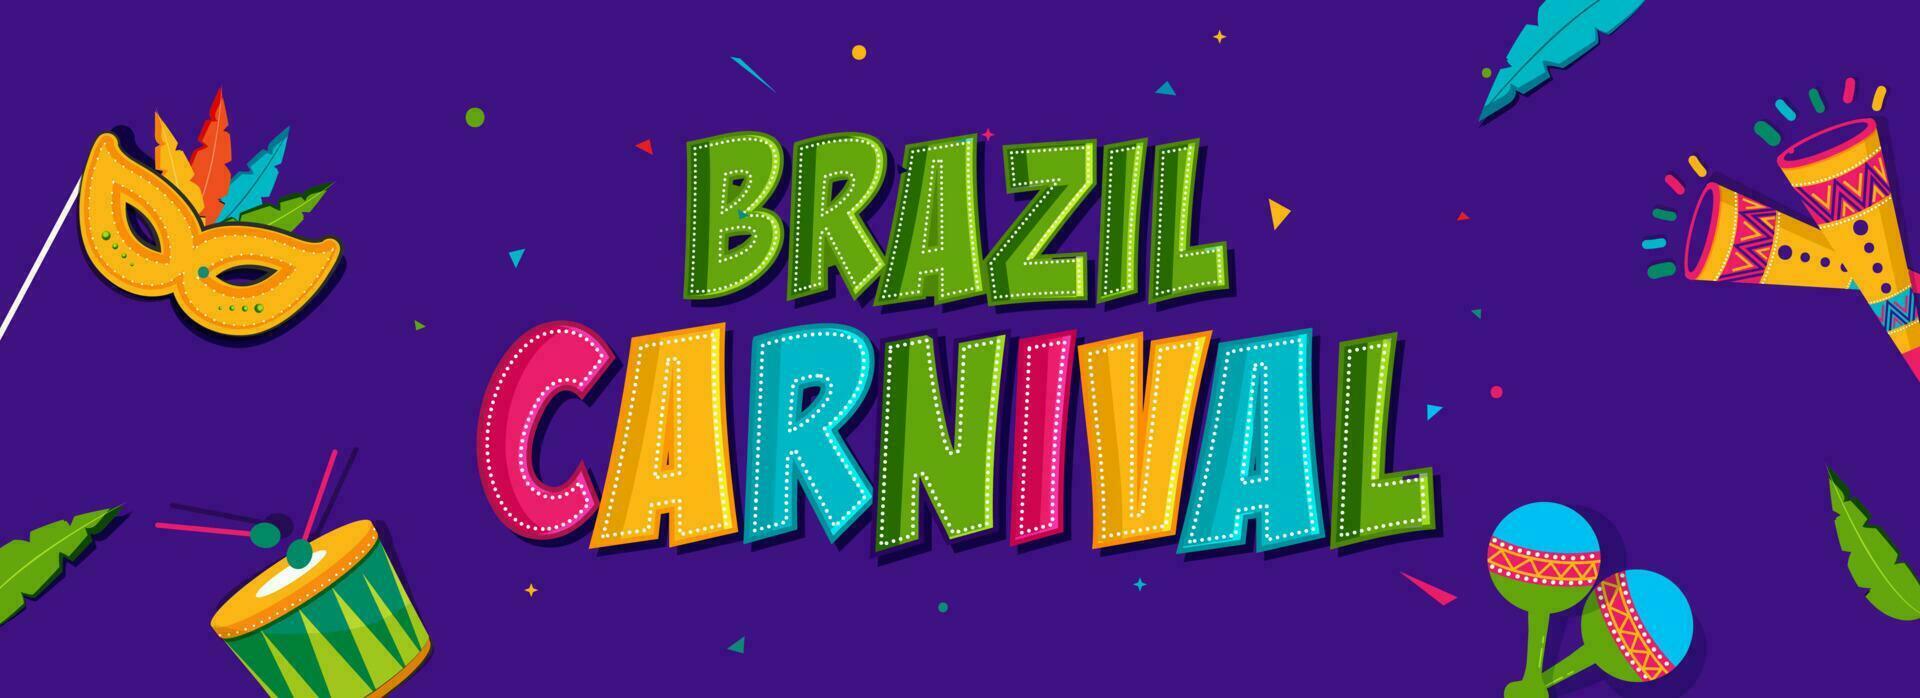 colorato brasile carnevale font con musica strumenti, piuma maschera bastone  e coriandoli decorato su viola sfondo. 23320612 Arte vettoriale a Vecteezy